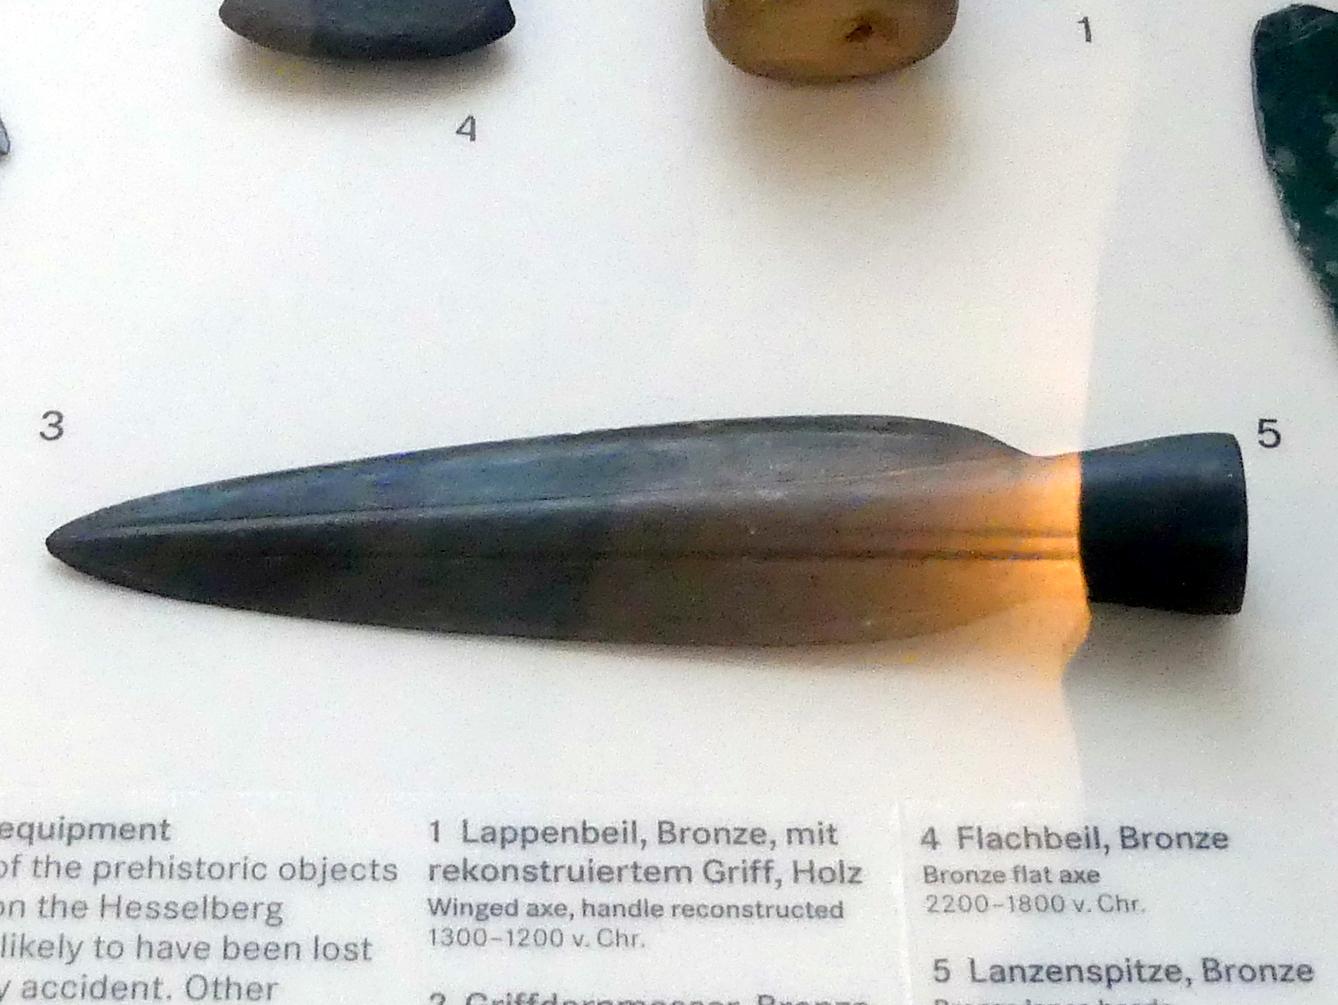 Lanzenspitze, Urnenfelderzeit, 1400 - 700 v. Chr., 1300 - 1200 v. Chr.